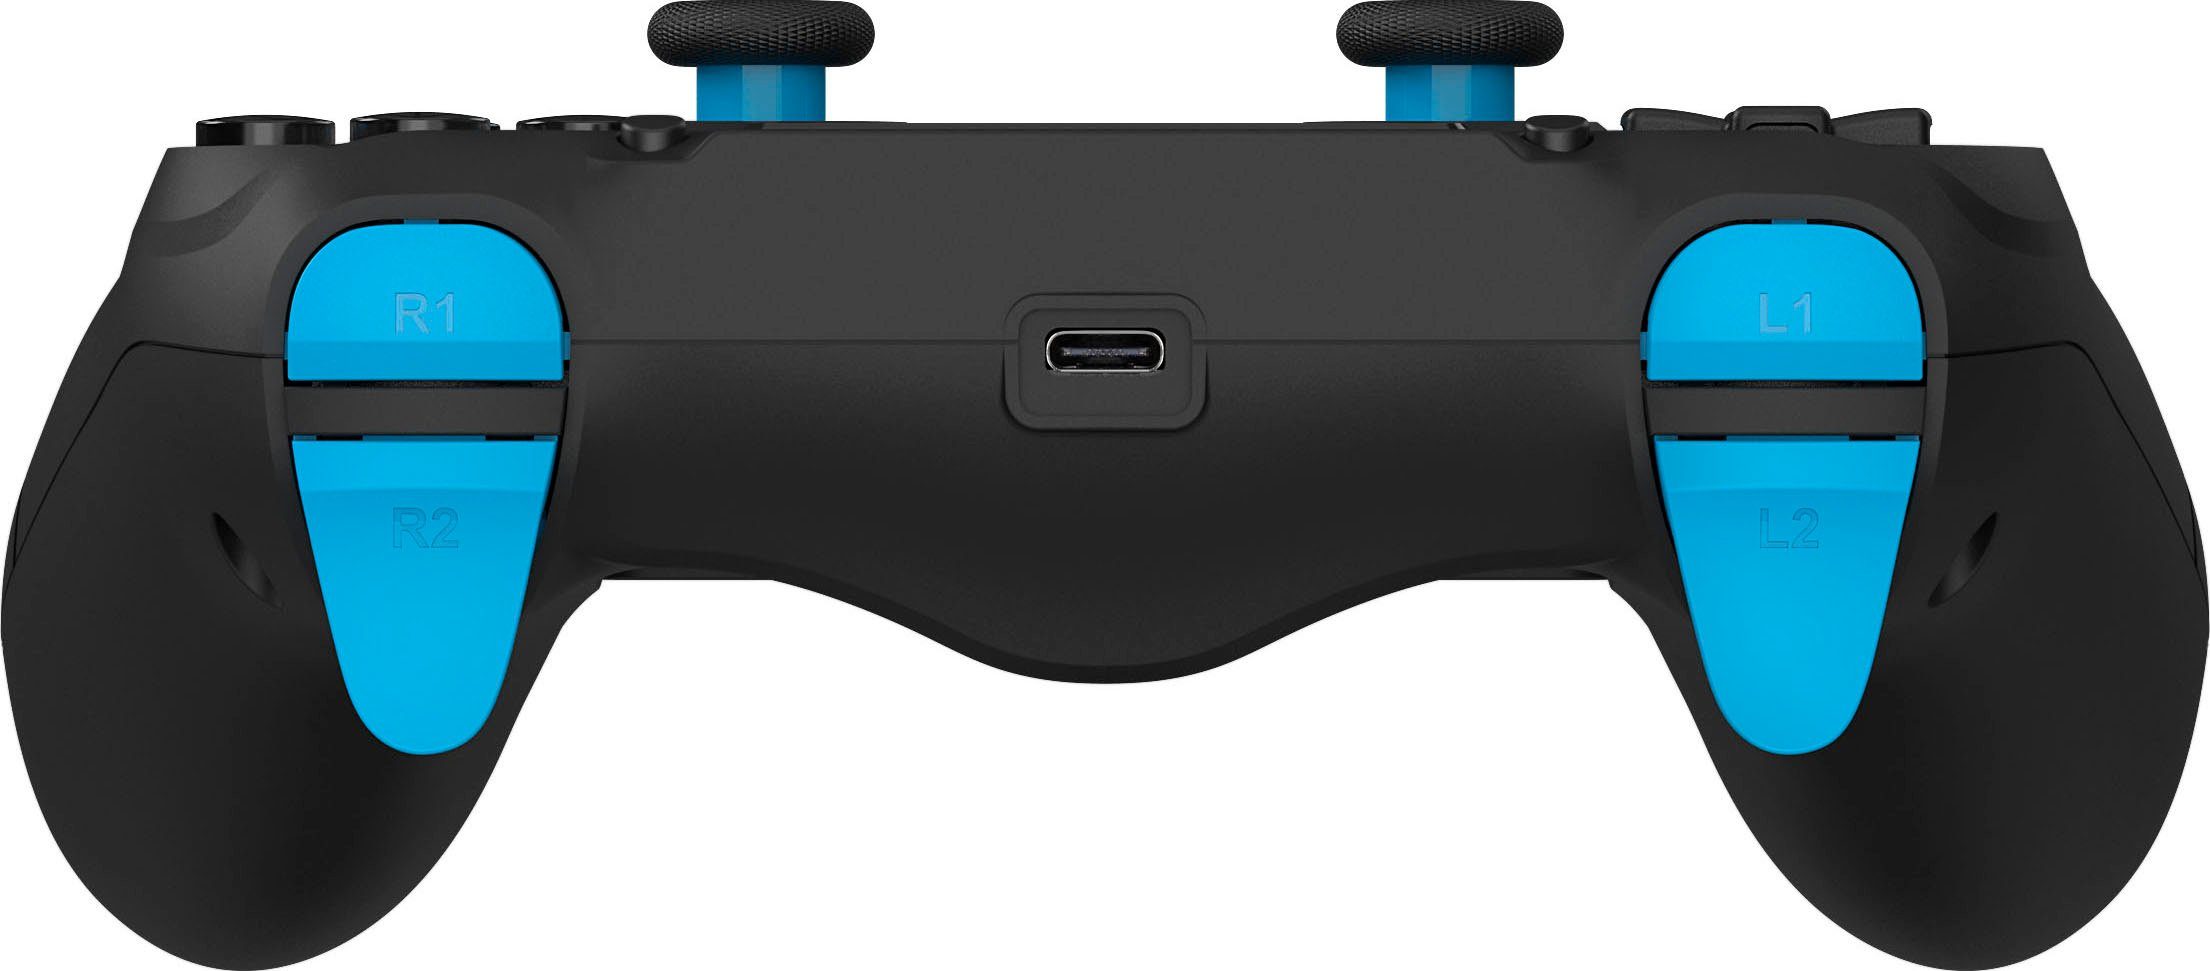 DRAGONSHOCK Mizar Wireless für schwarz PS4 Controller